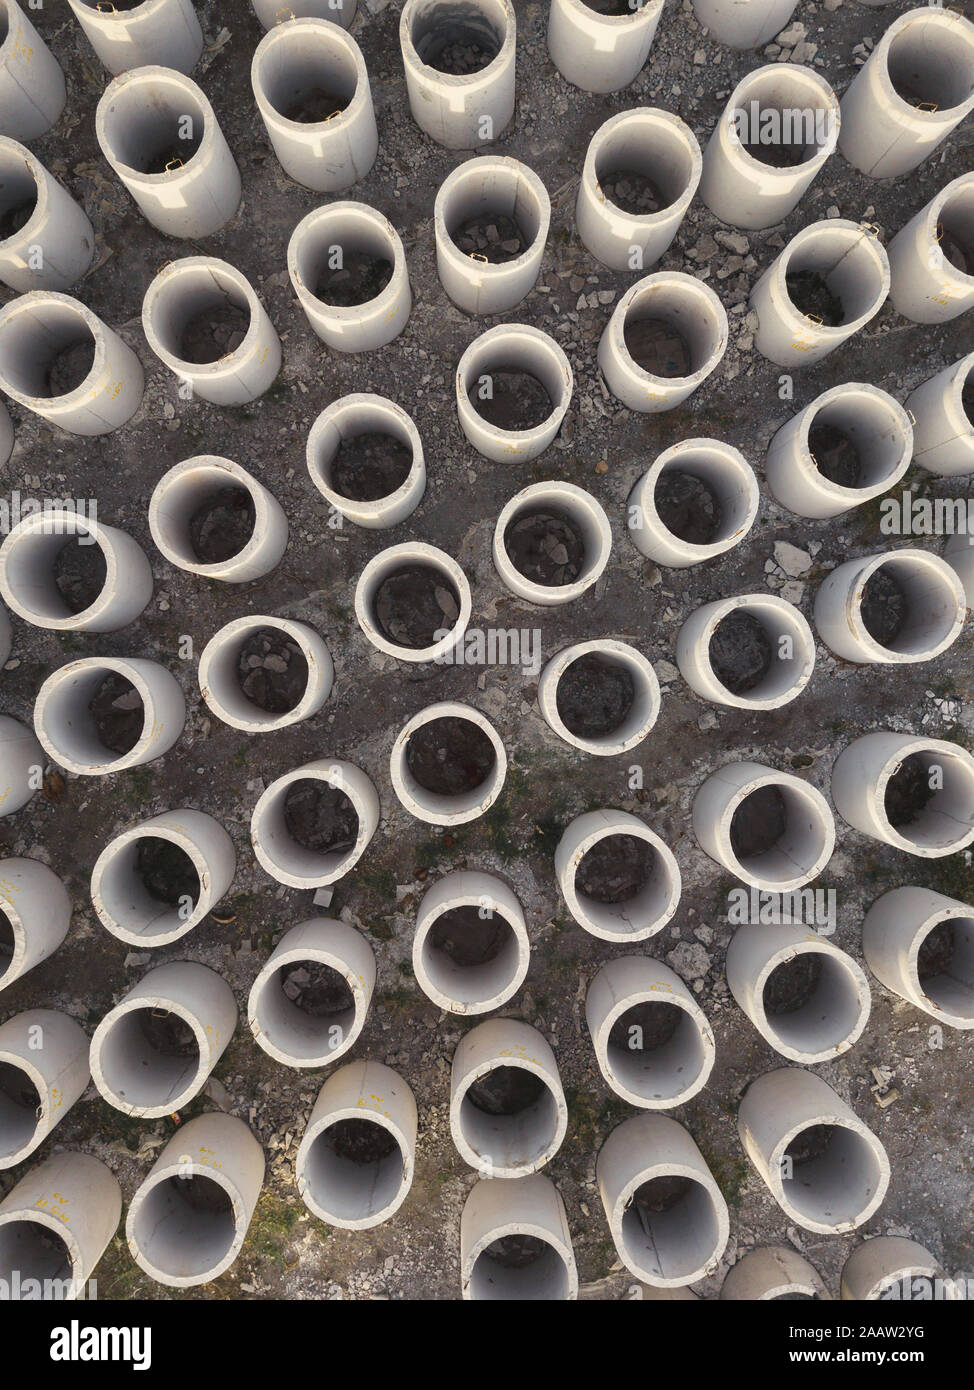 Vista aerea di tubazioni in calcestruzzo, Kedungu, Bali, Indonesia Foto Stock